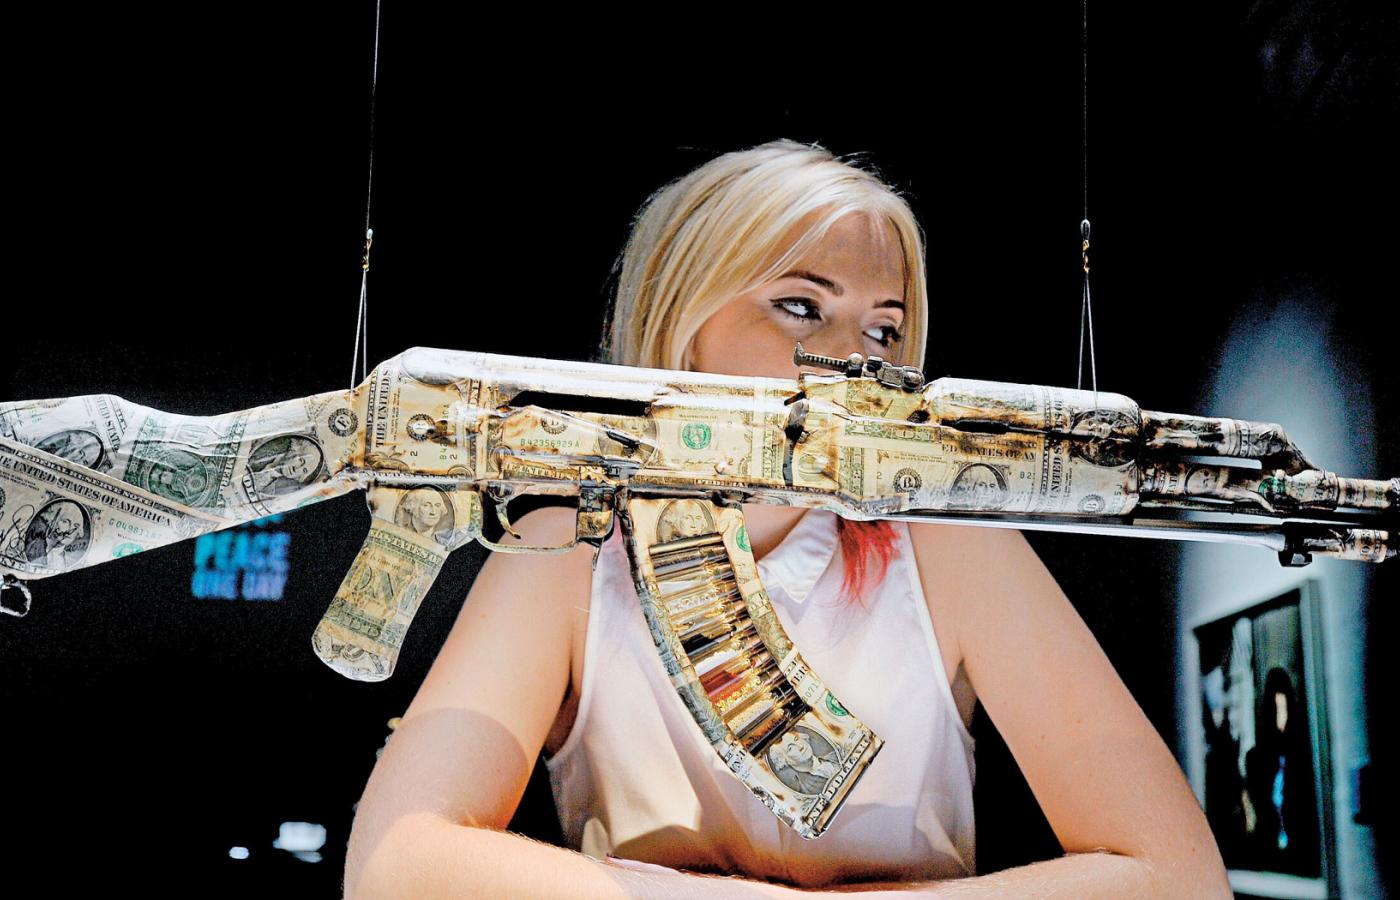 Emma Gilhooly z bronią oklejoną dolarami projektu Brana Symondsona w Institute of Contemporary Arts w Londynie.